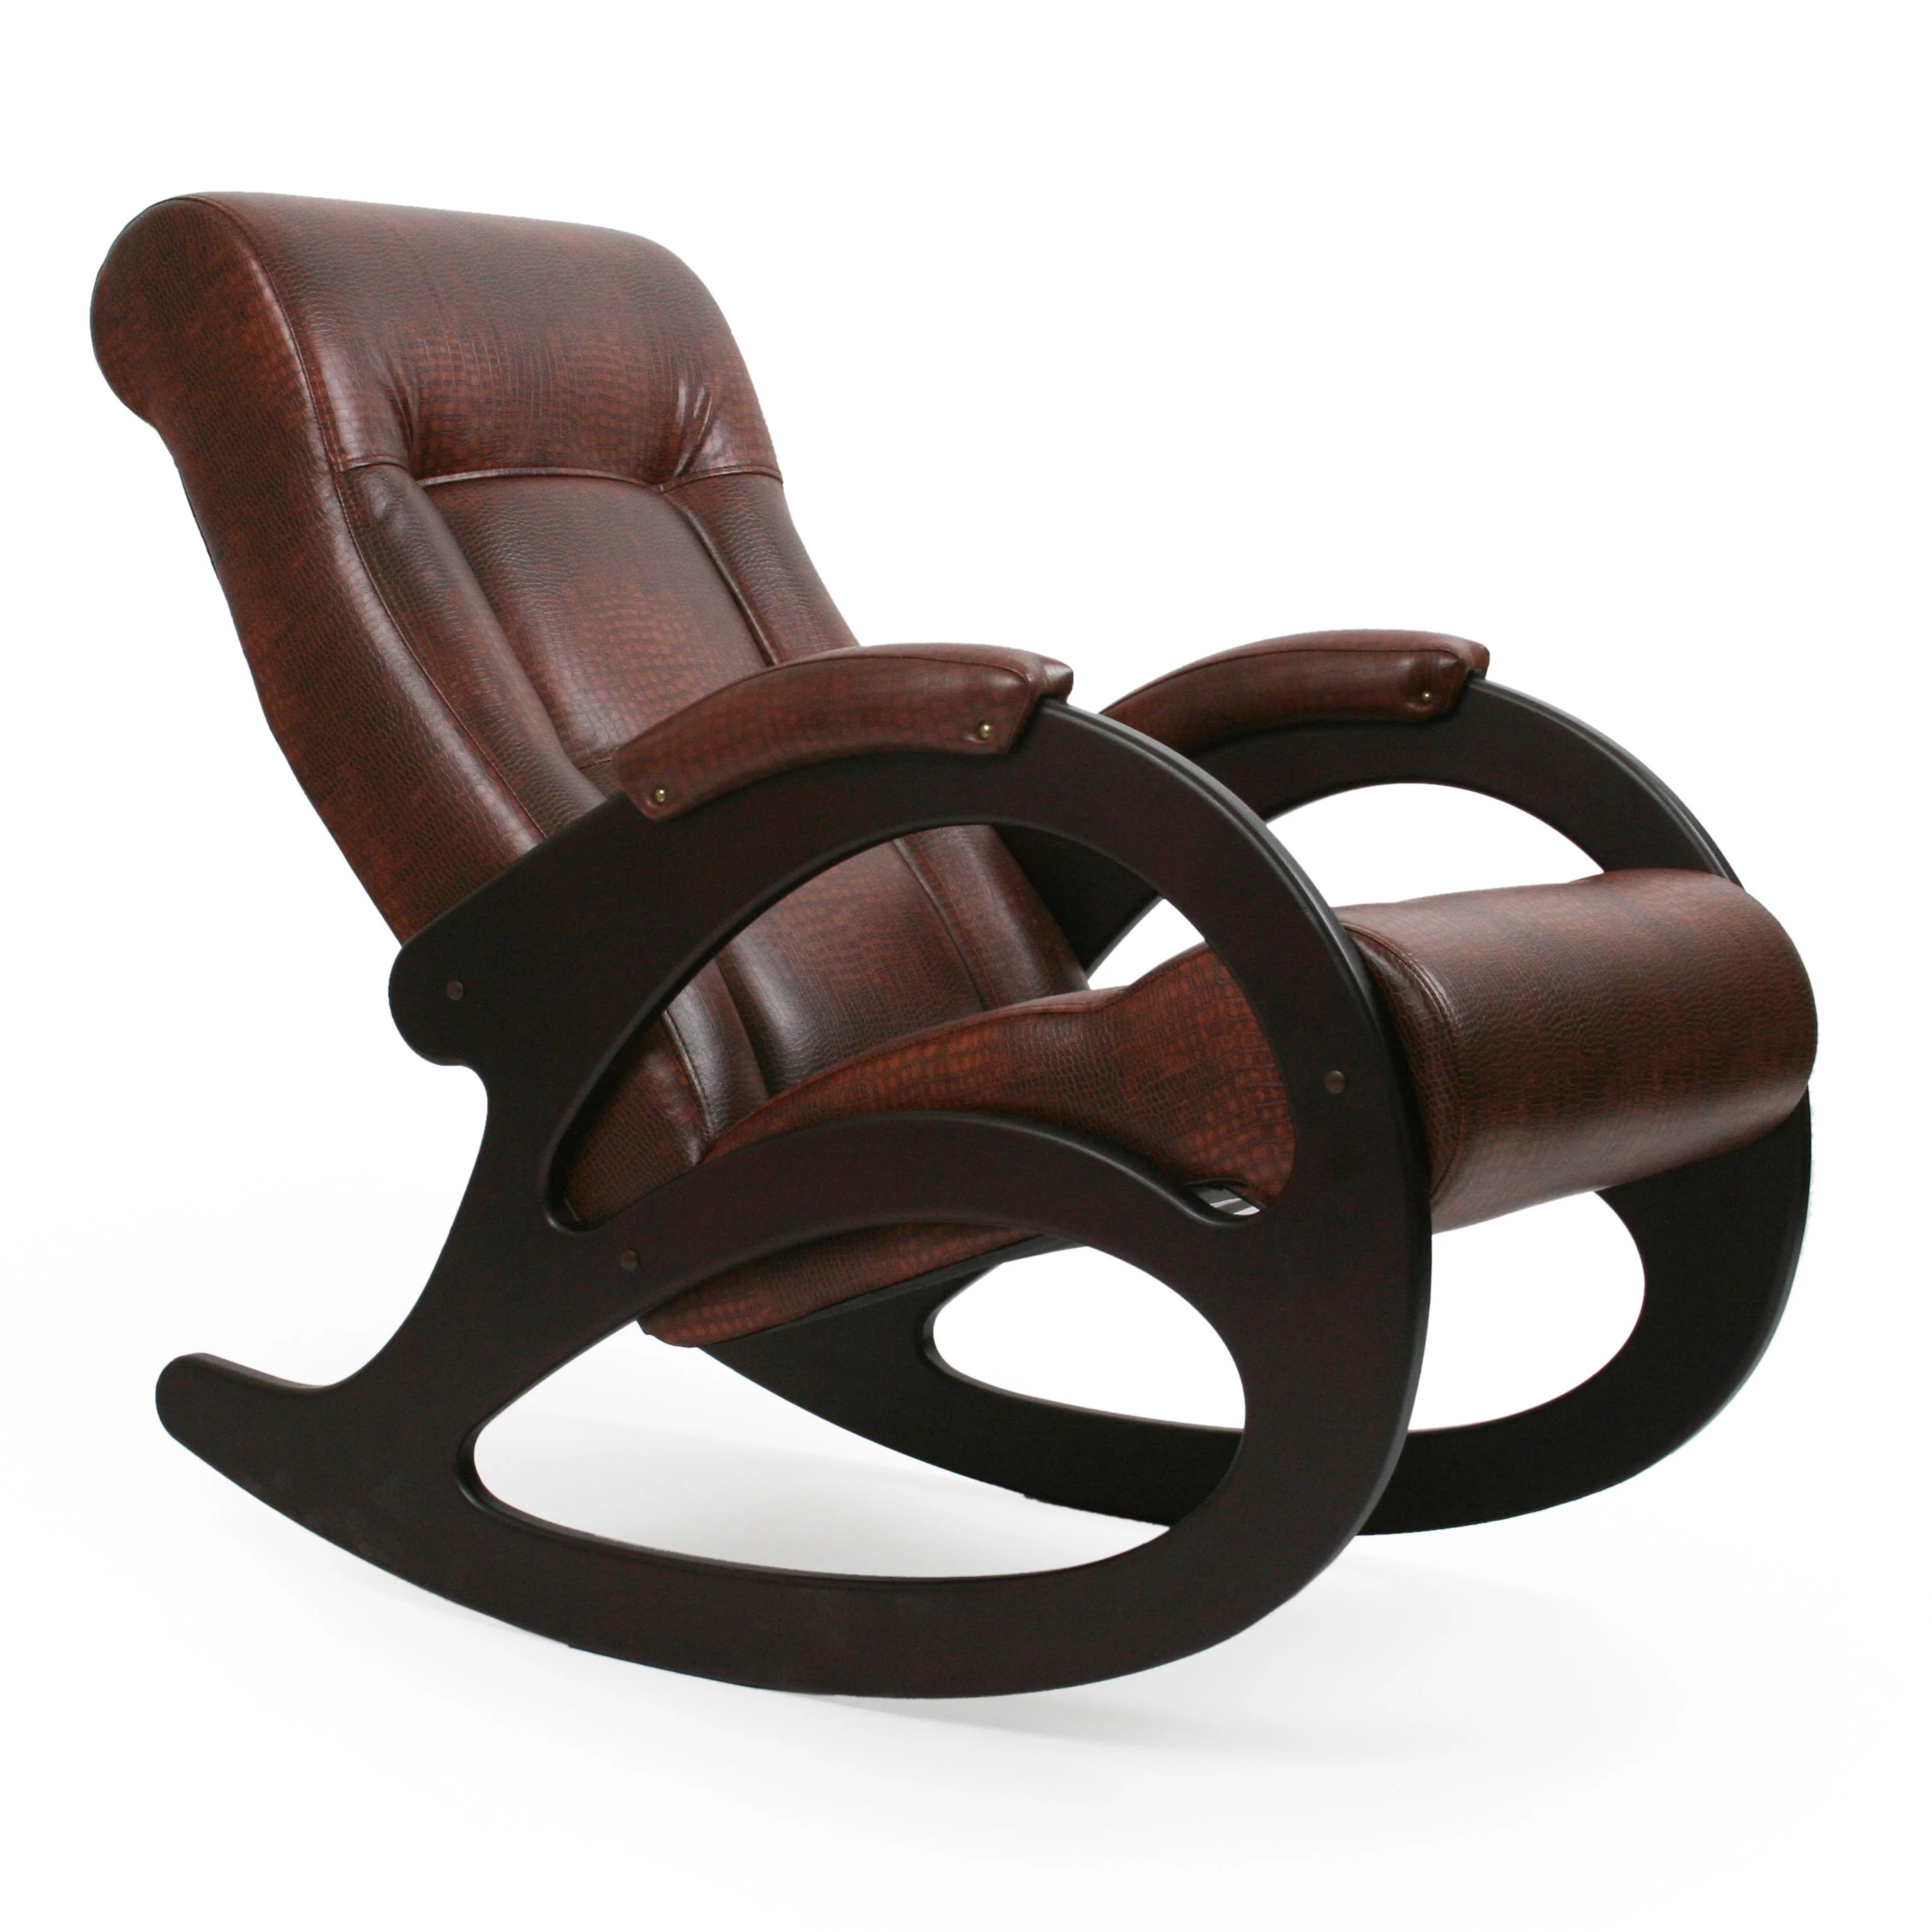 Модели кресла качалки. Мебель Импэкс кресло качалка. Кресло качалка комфорт 4 Импэкс мебель. Мебель Импекс кресла качалки. Кресло-качалка комфорт 44.